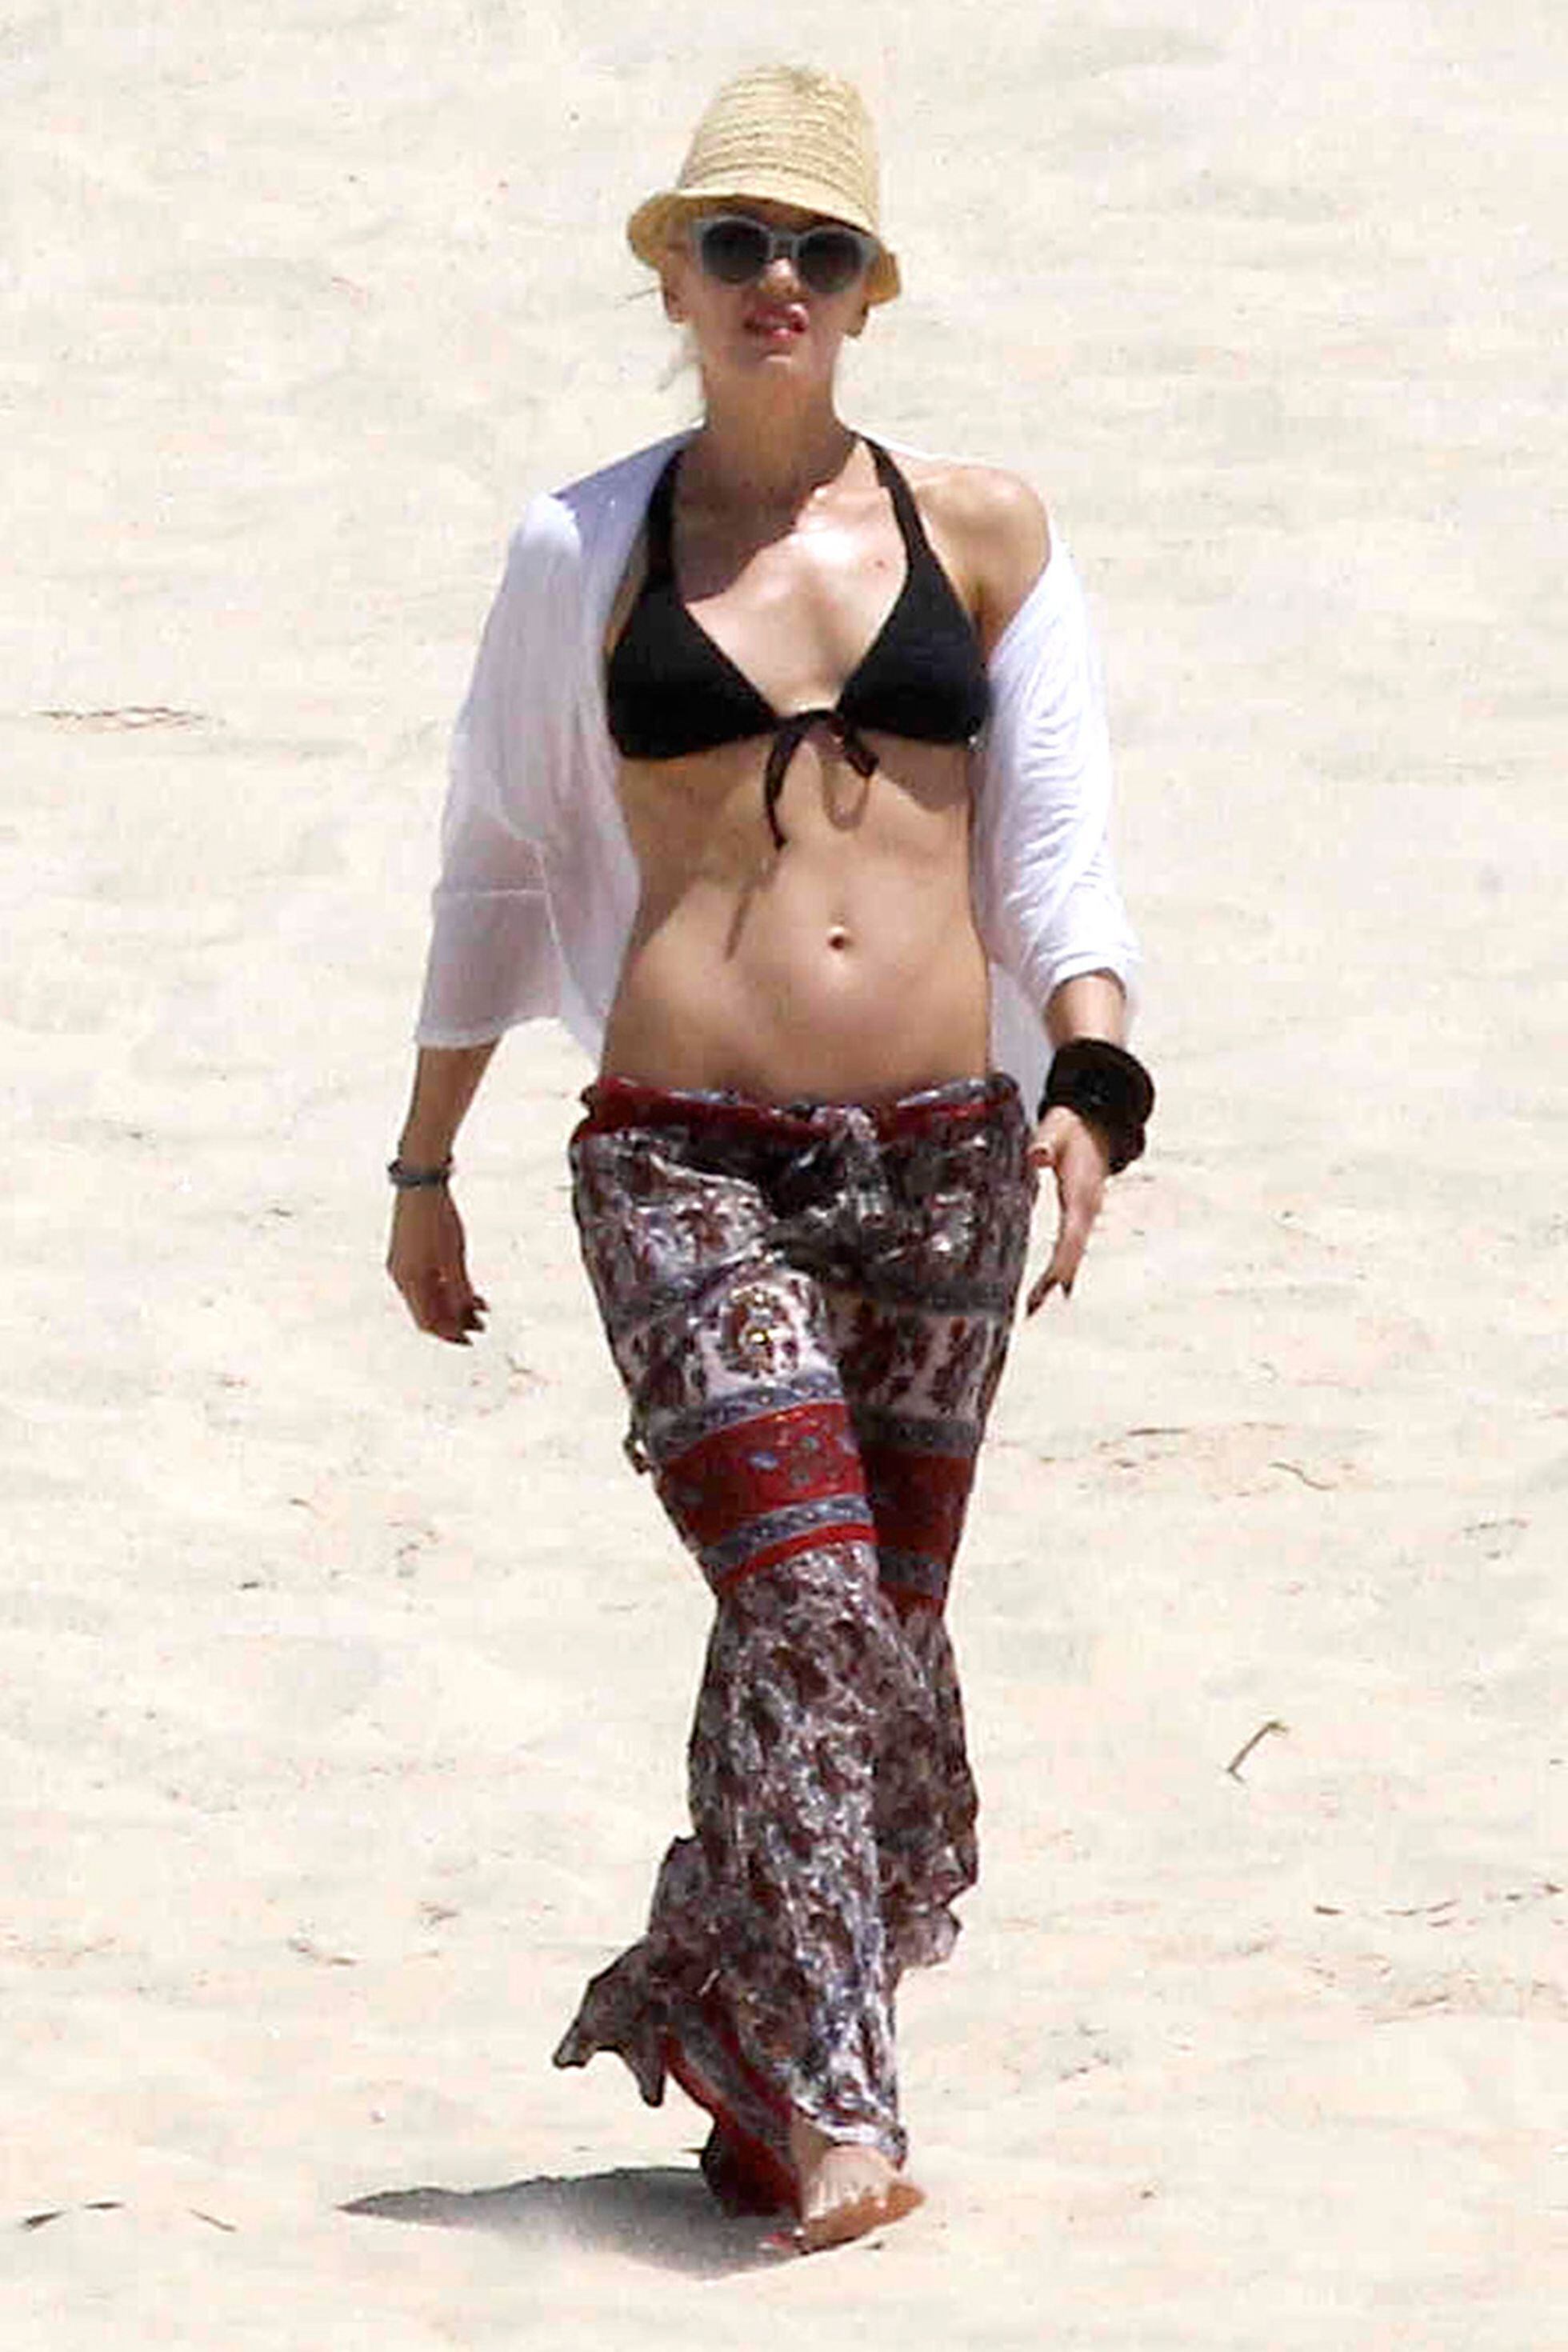 Una Famosa Un Bikini 30 Formas De Lucirse En La Playa Fotos Famosos S Moda El PaÍs